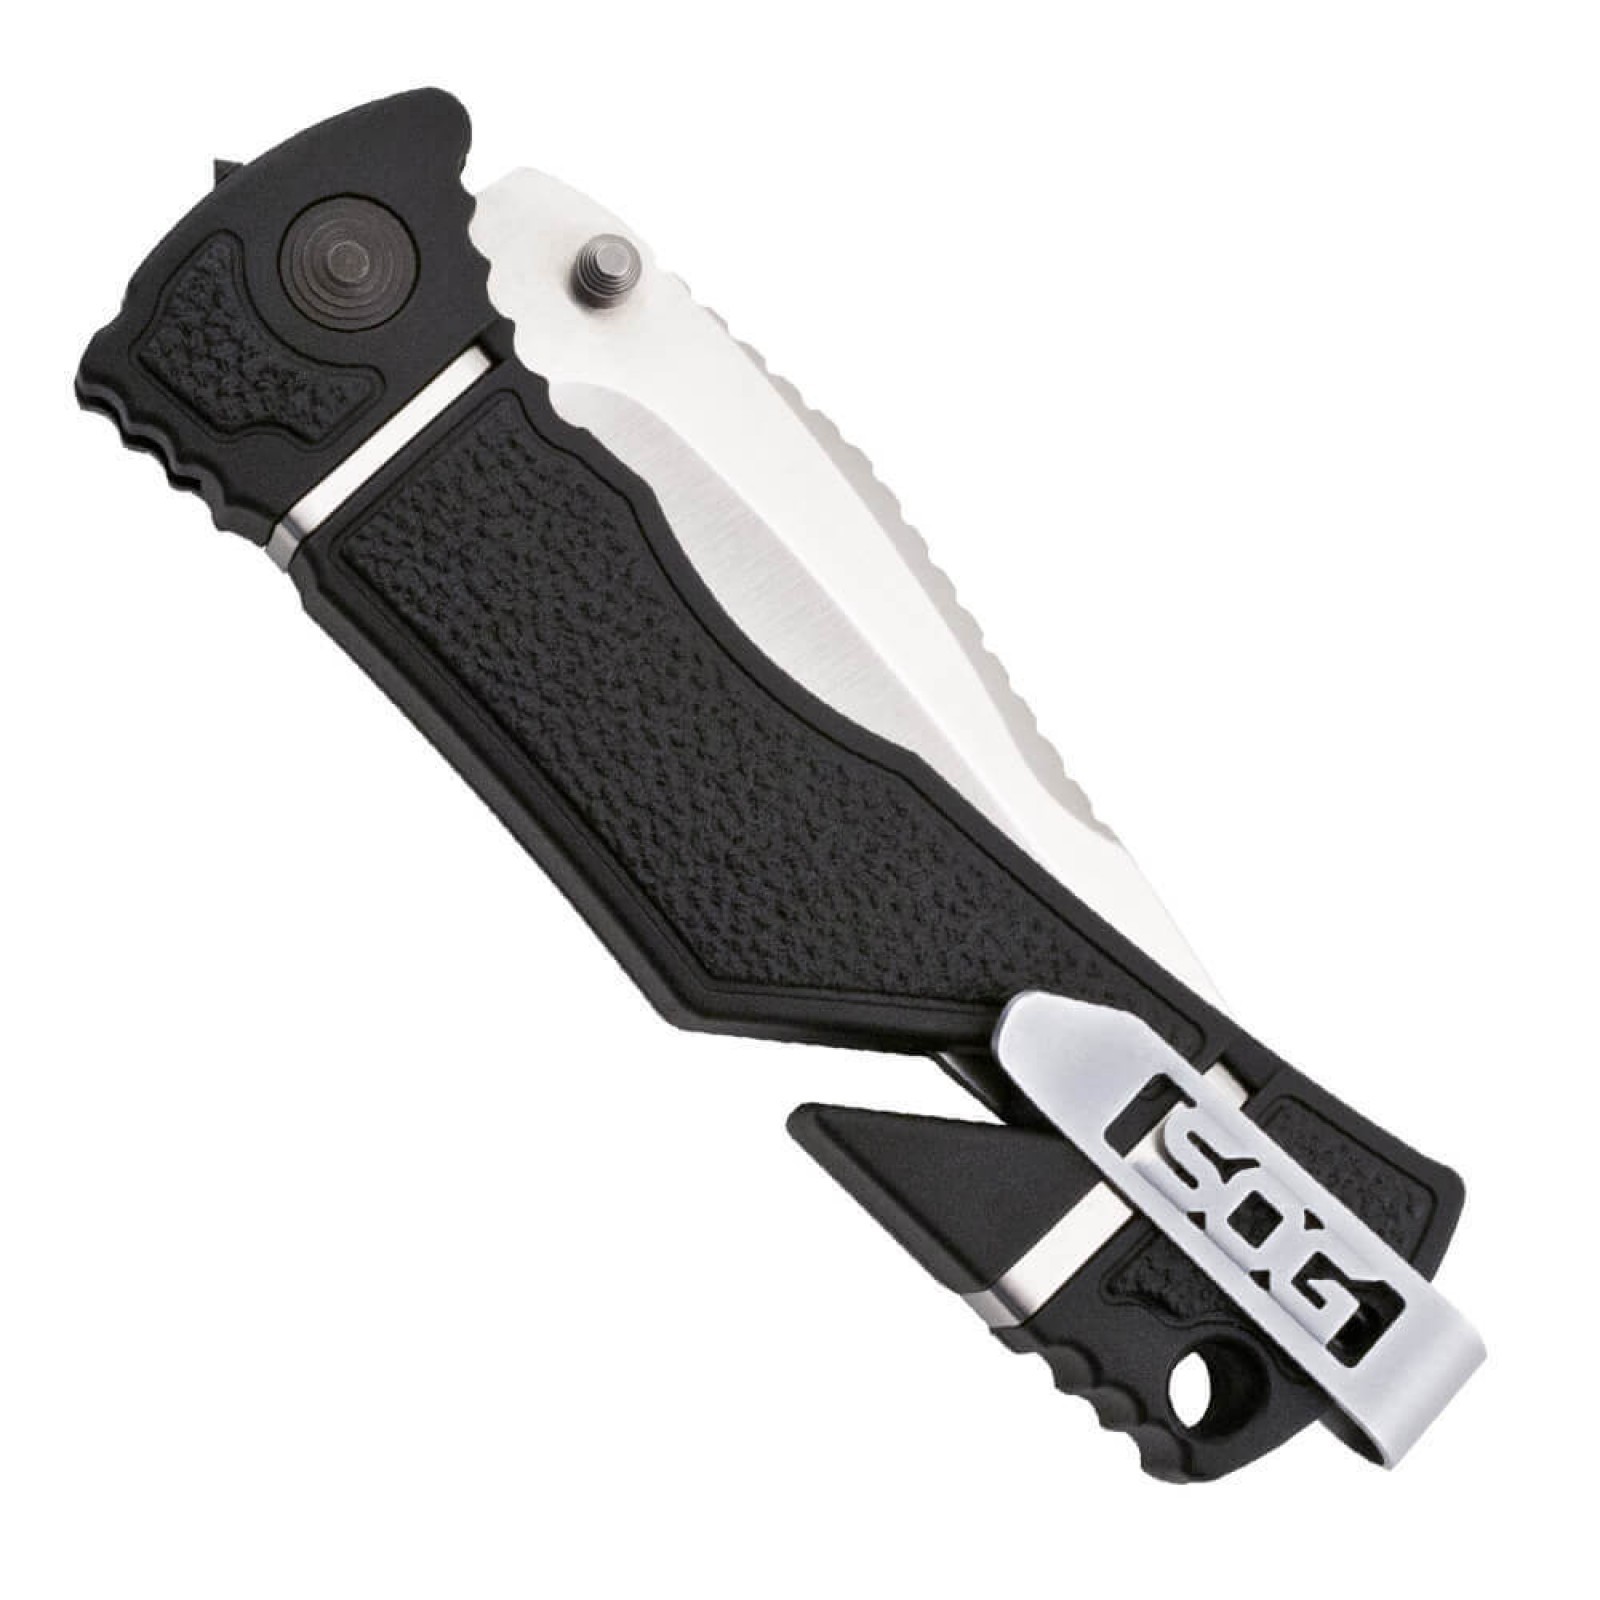 Складной нож TRIDENT ELITE - SOG TF101, сталь AUS-8, рукоять термопластик GRN с резиновыми вставками - фото 6